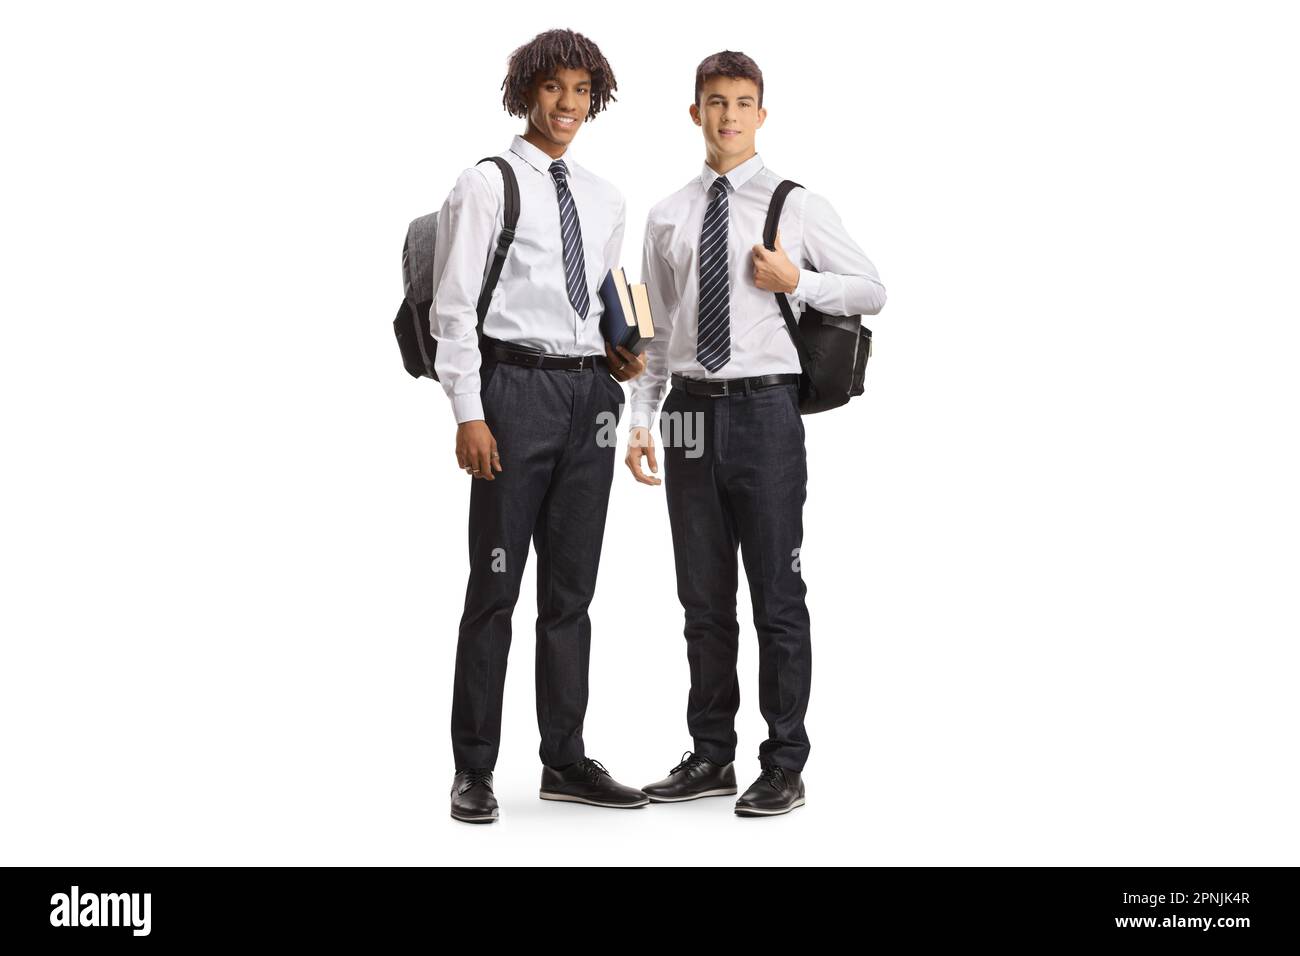 Studenti maschi caucasici e afroamericani in uniformi universitarie isolati su sfondo bianco Foto Stock